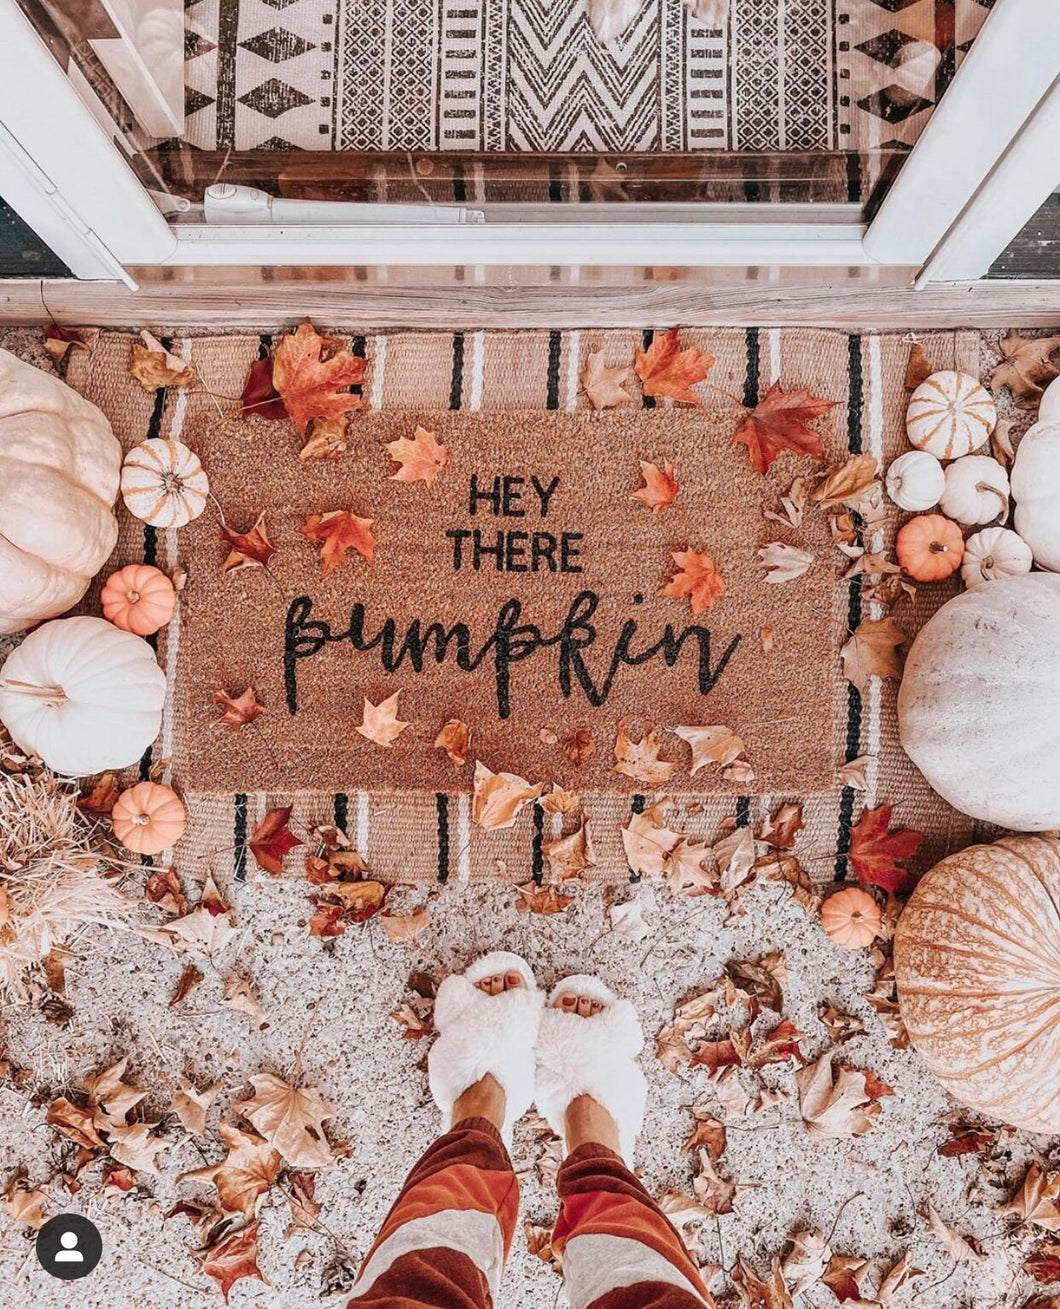 Hey there pumpkin doormat